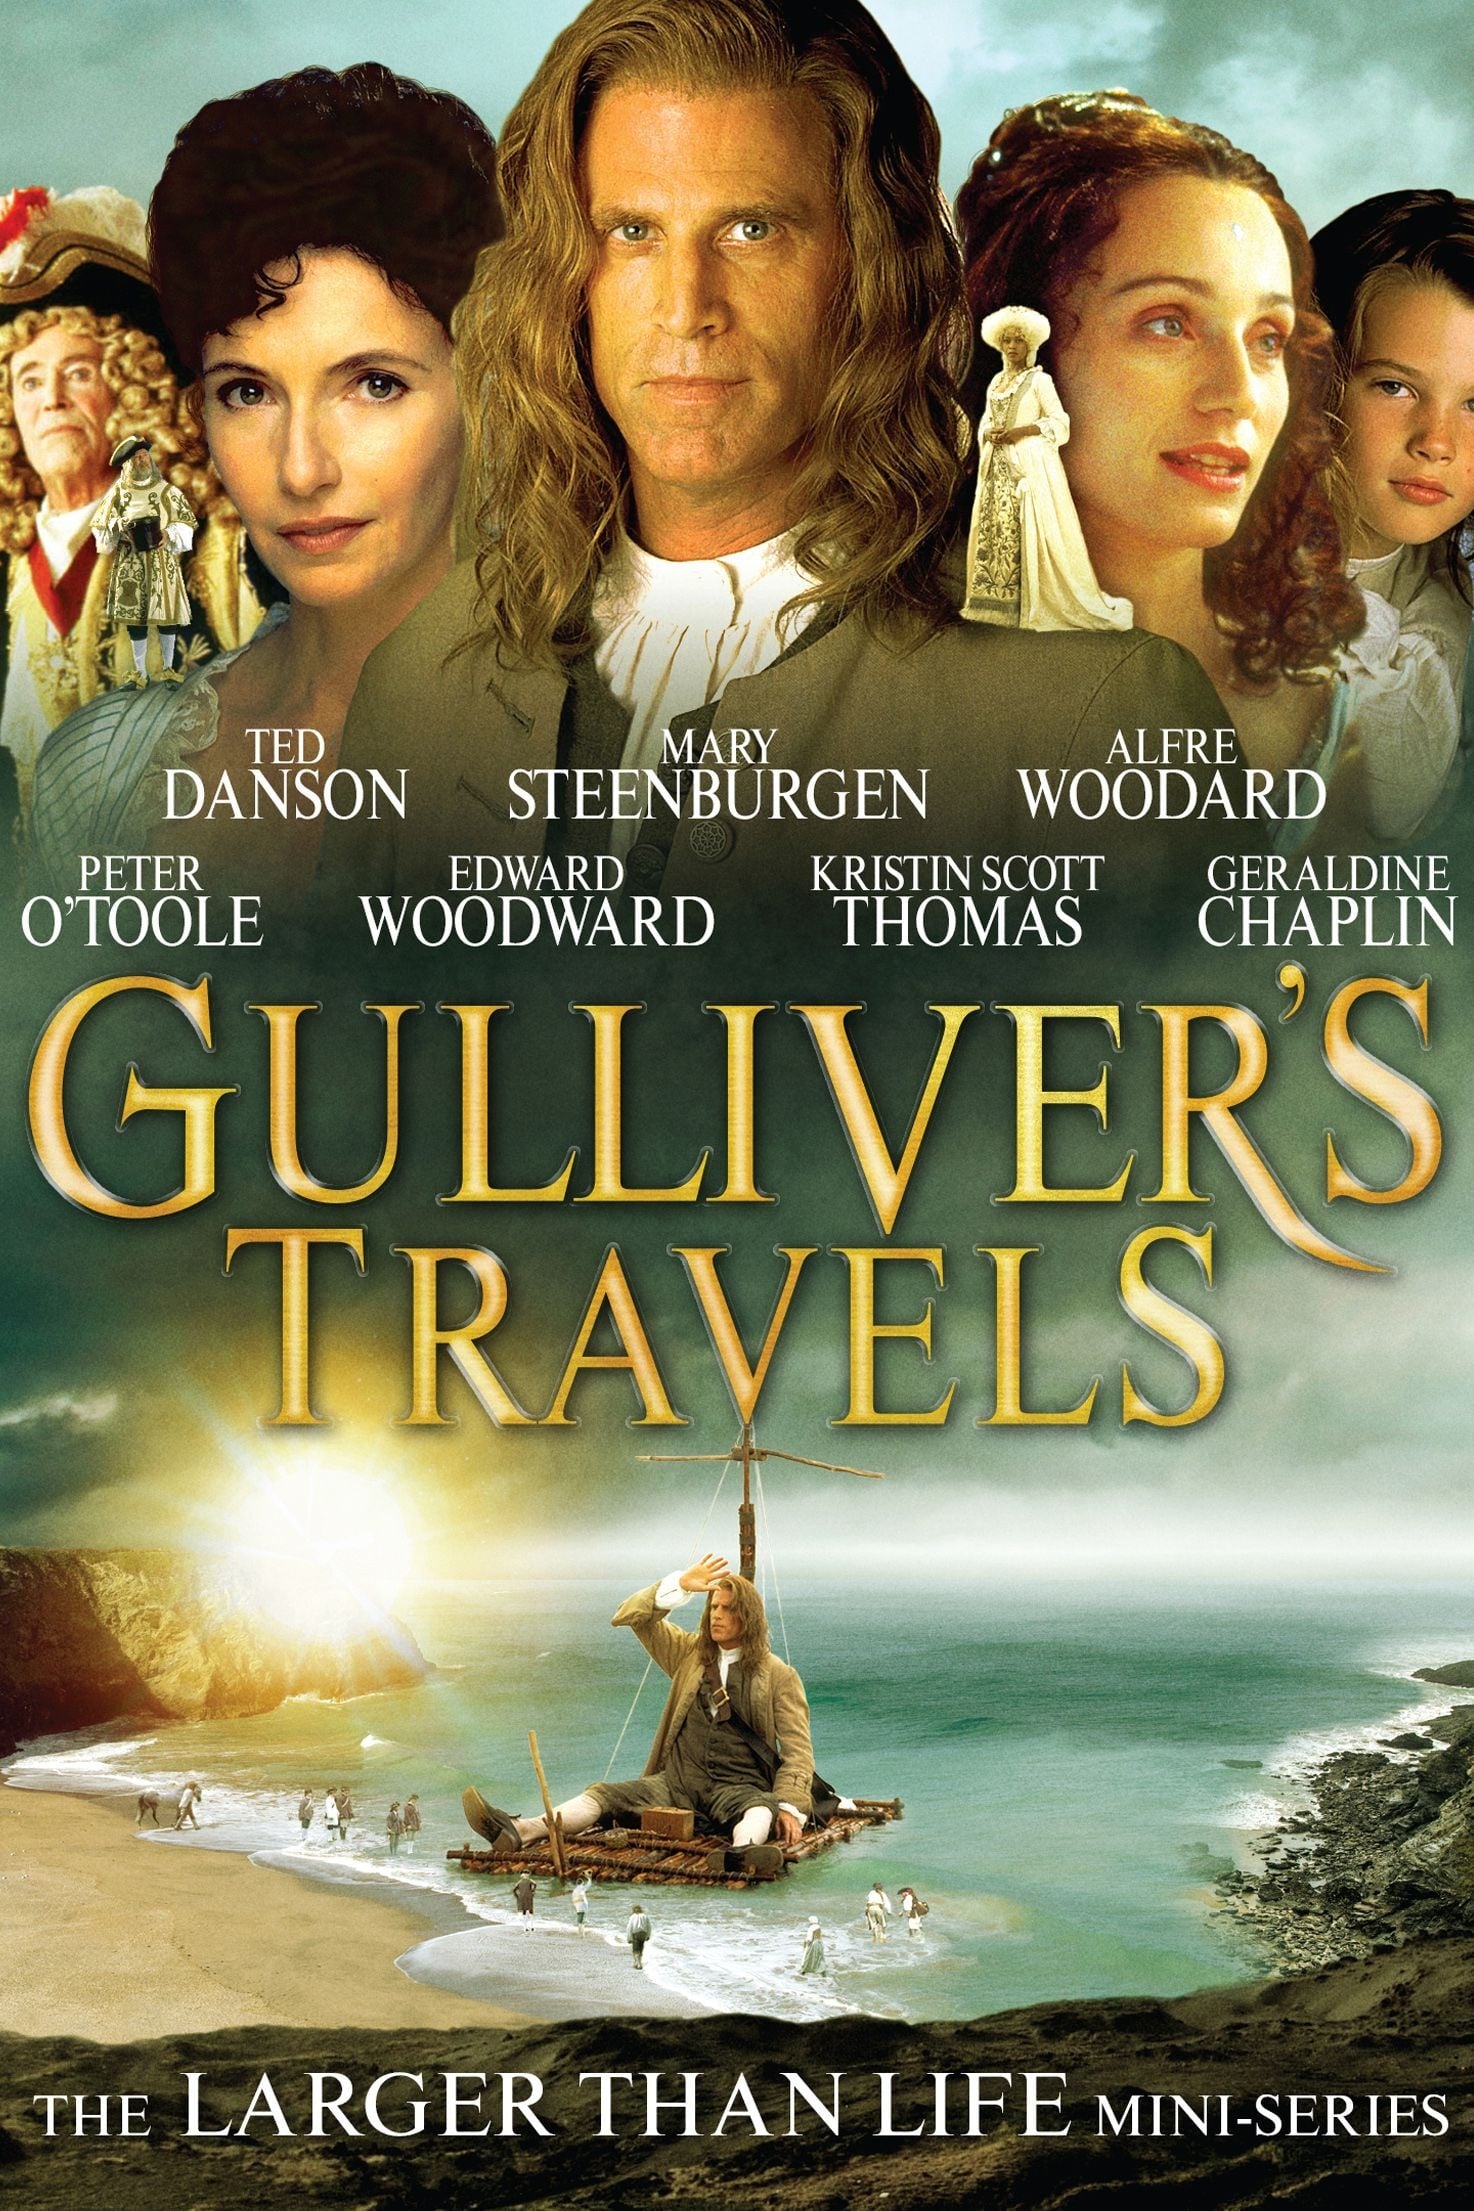 Les Voyages de Gulliver (1996)